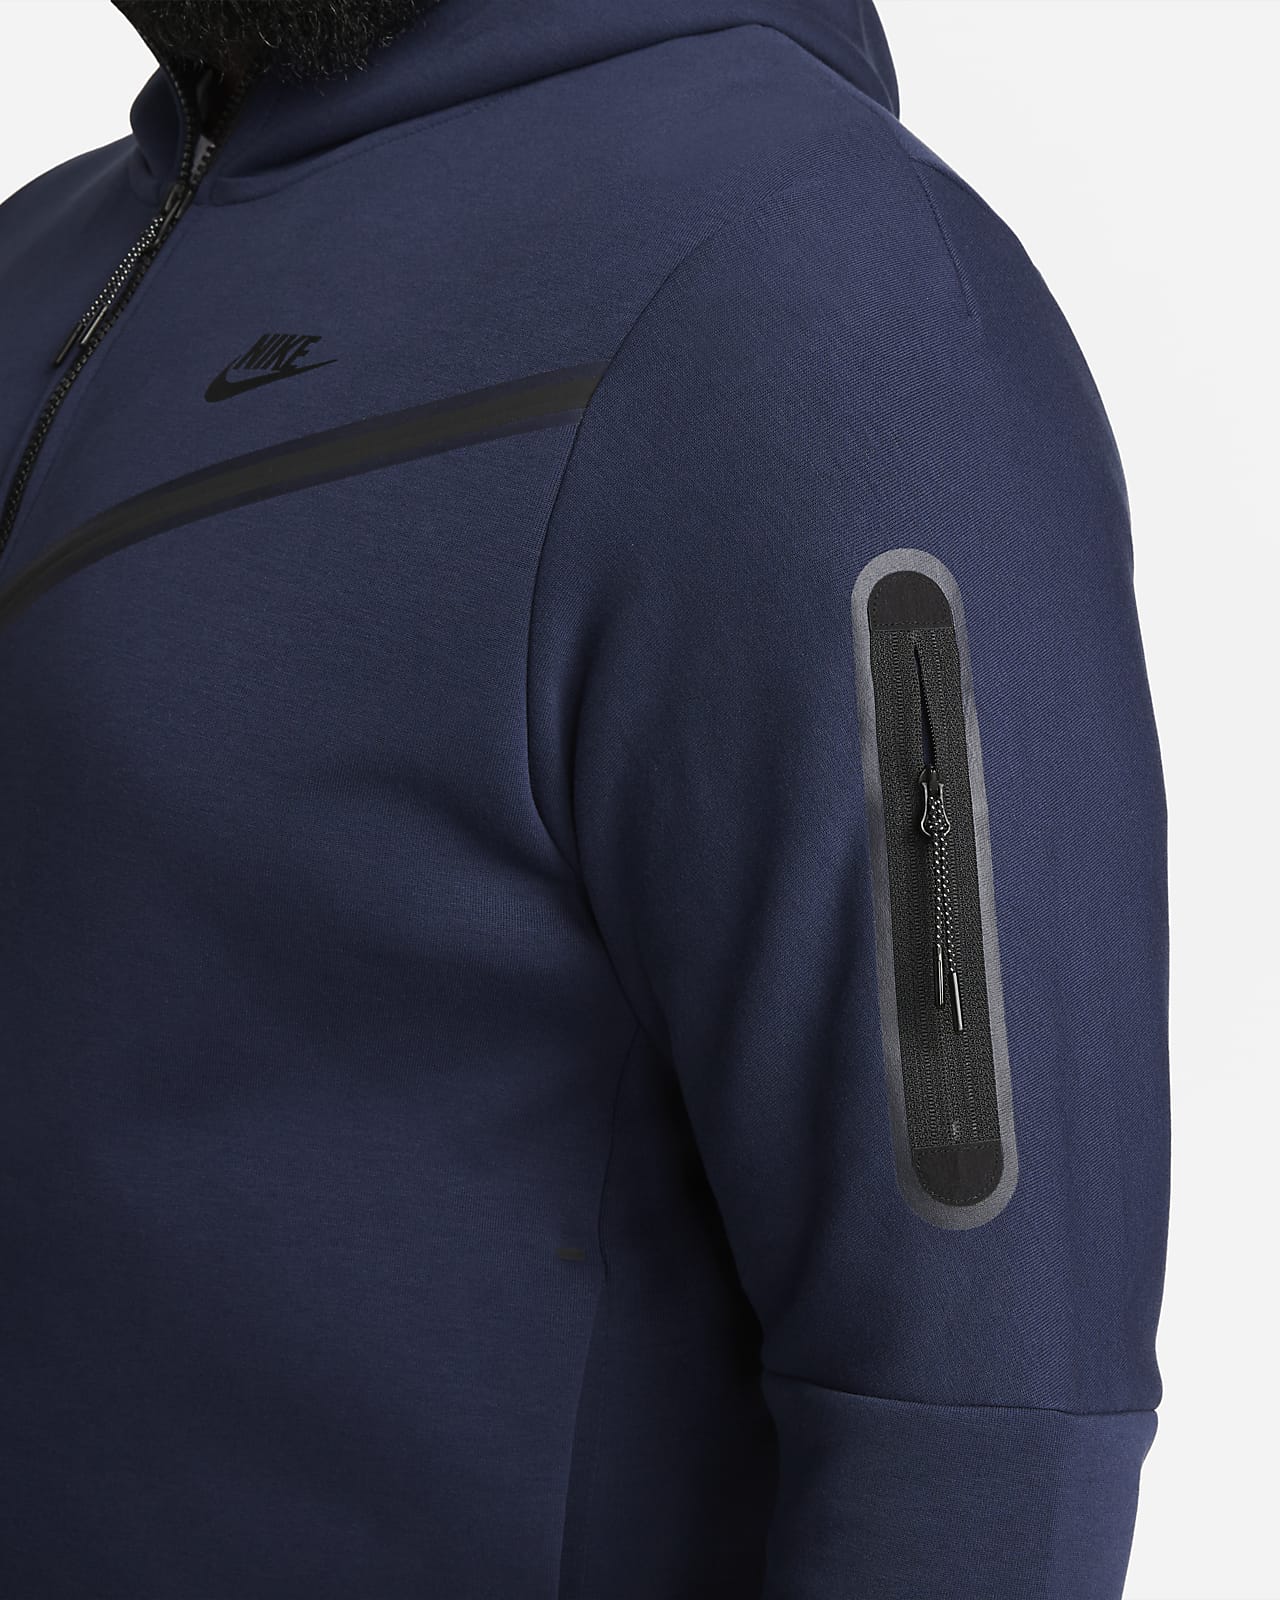 Activewear Mens Jacket in Full-Zip Fleece and Long Sleeves 